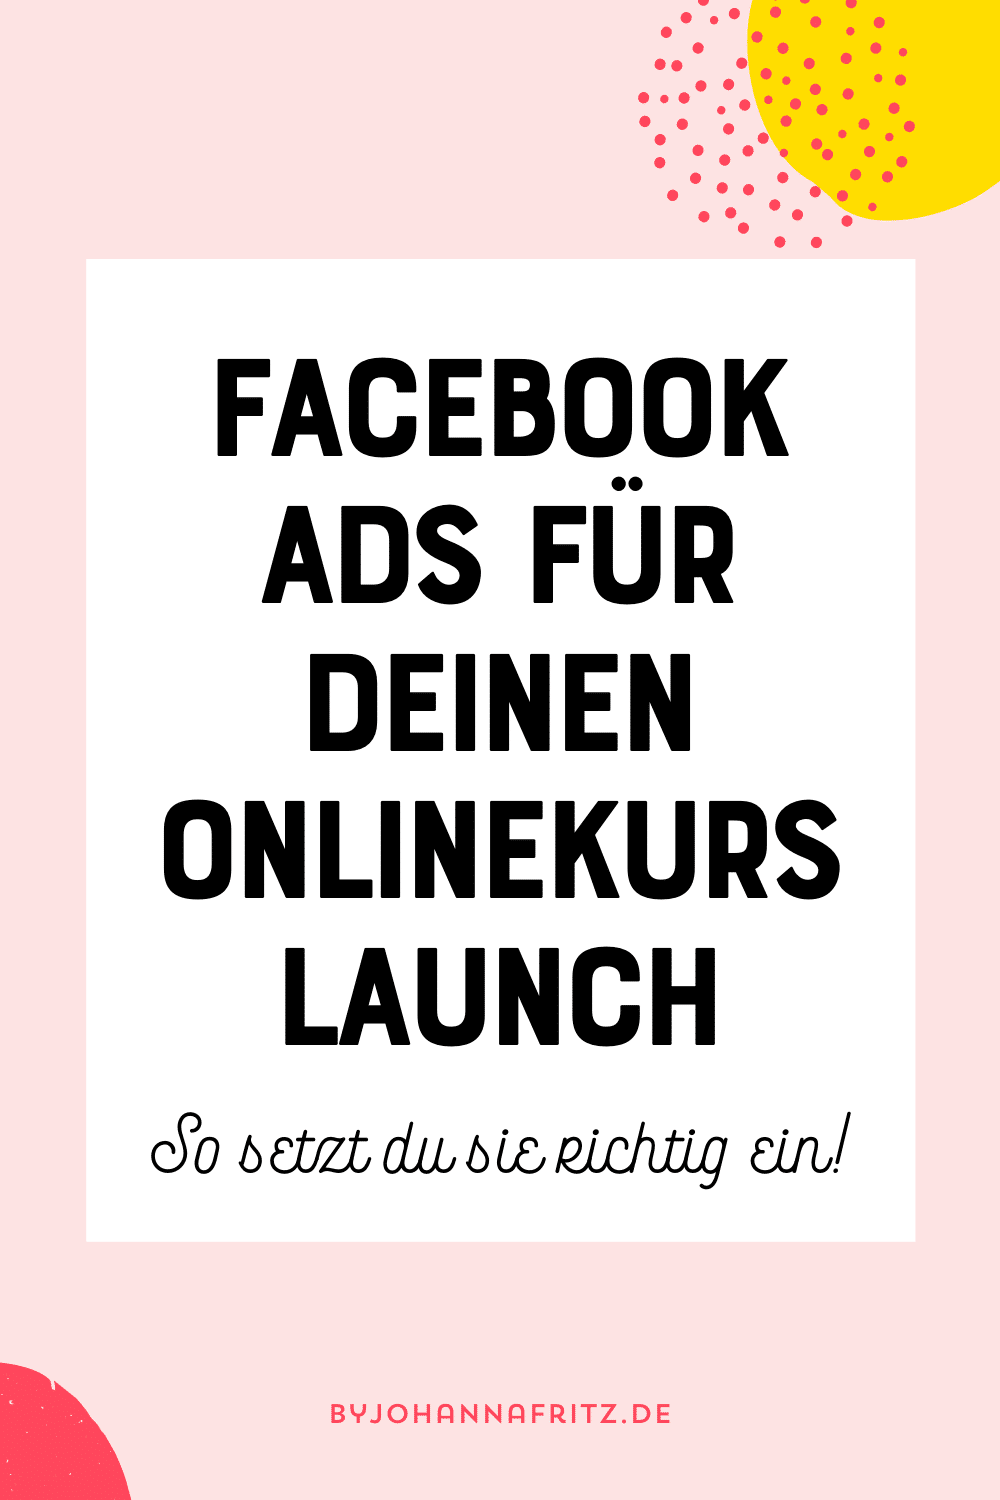 Facebook Ads für den Launch einsetzen - Anna-Lena Eckstein im Interview by Johanna Fritz